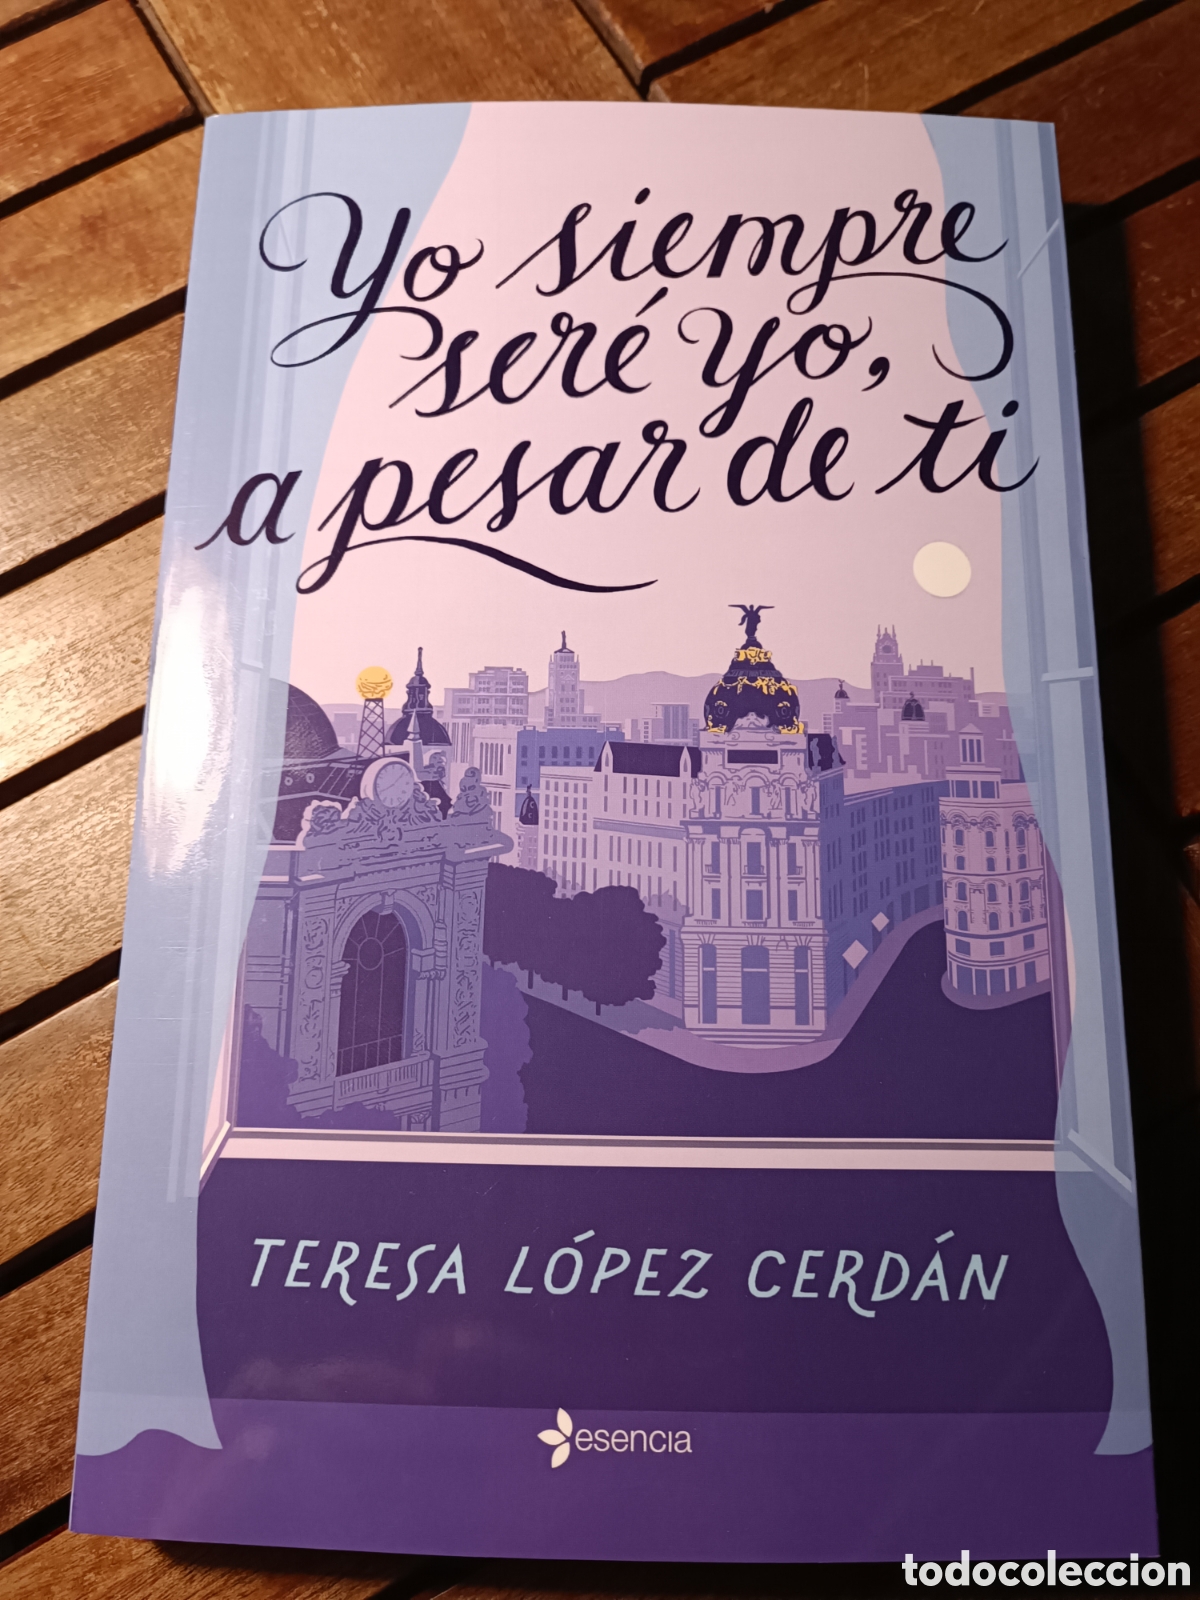 yo siempre sere yo, a pesar de ti. Teresa Lopez Cerdan.